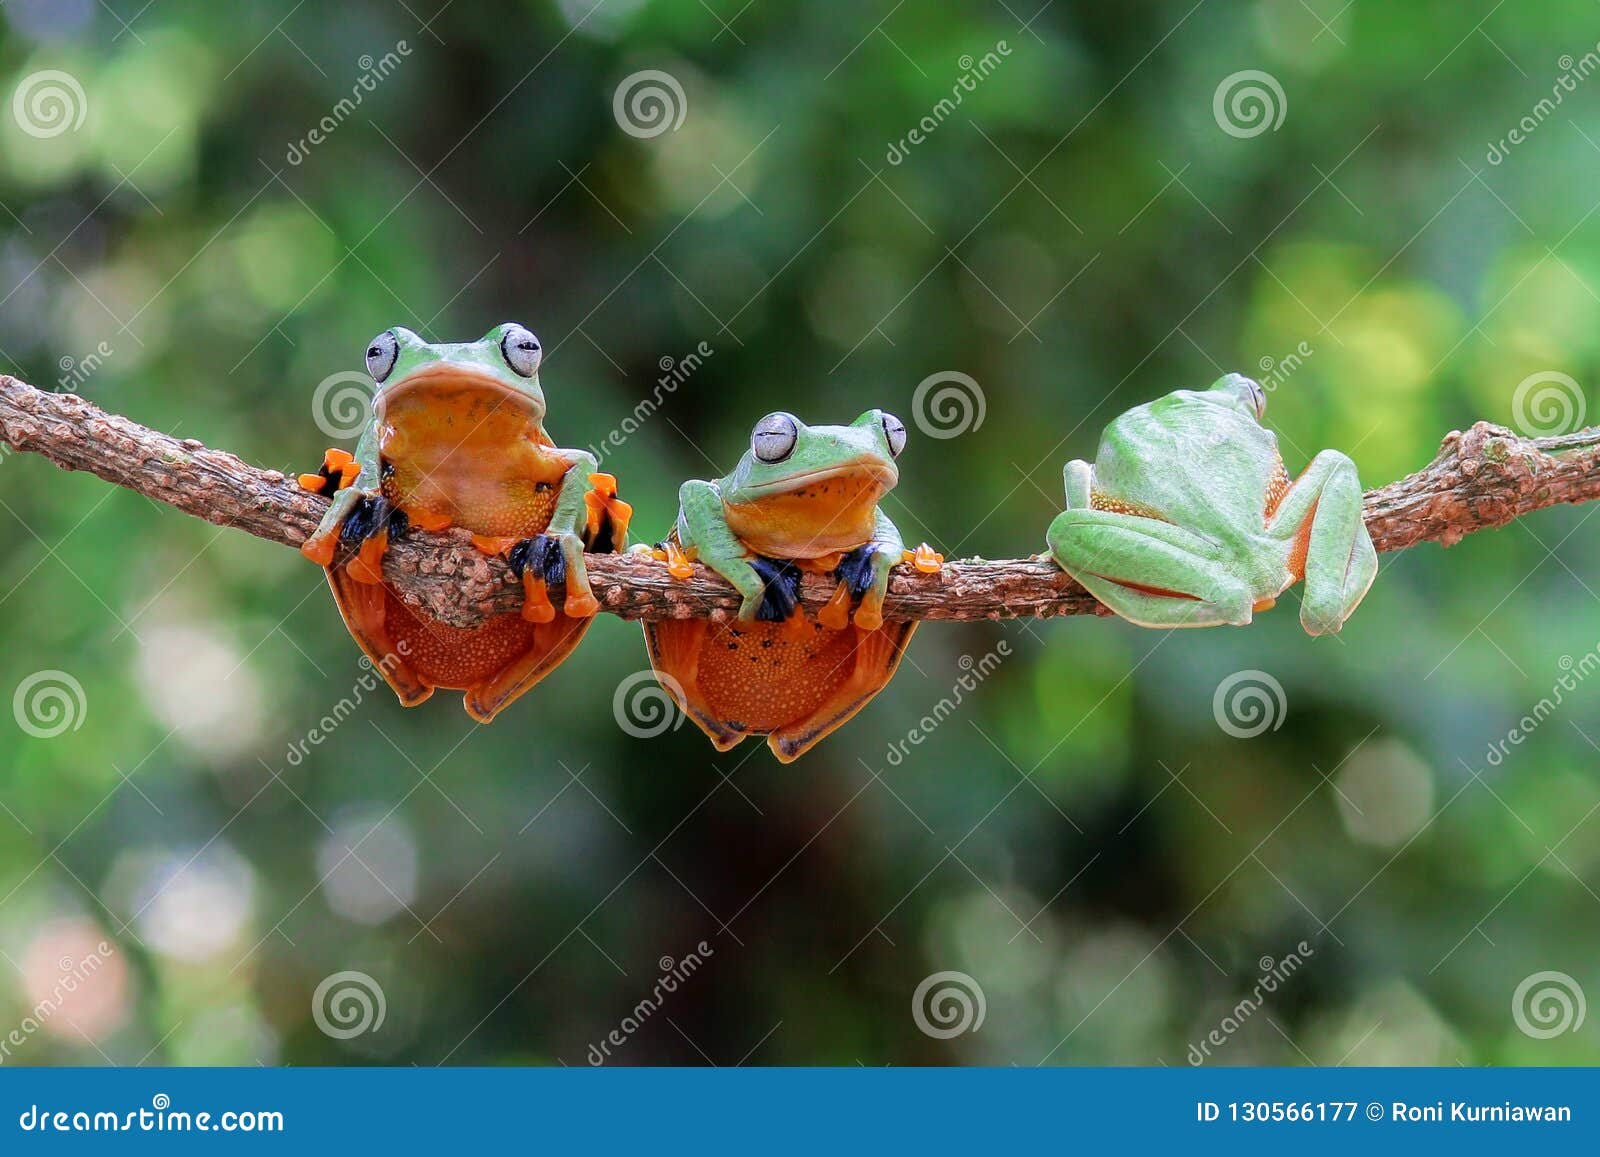 wallace`s flying frog, wallace`s flying frog on a branch